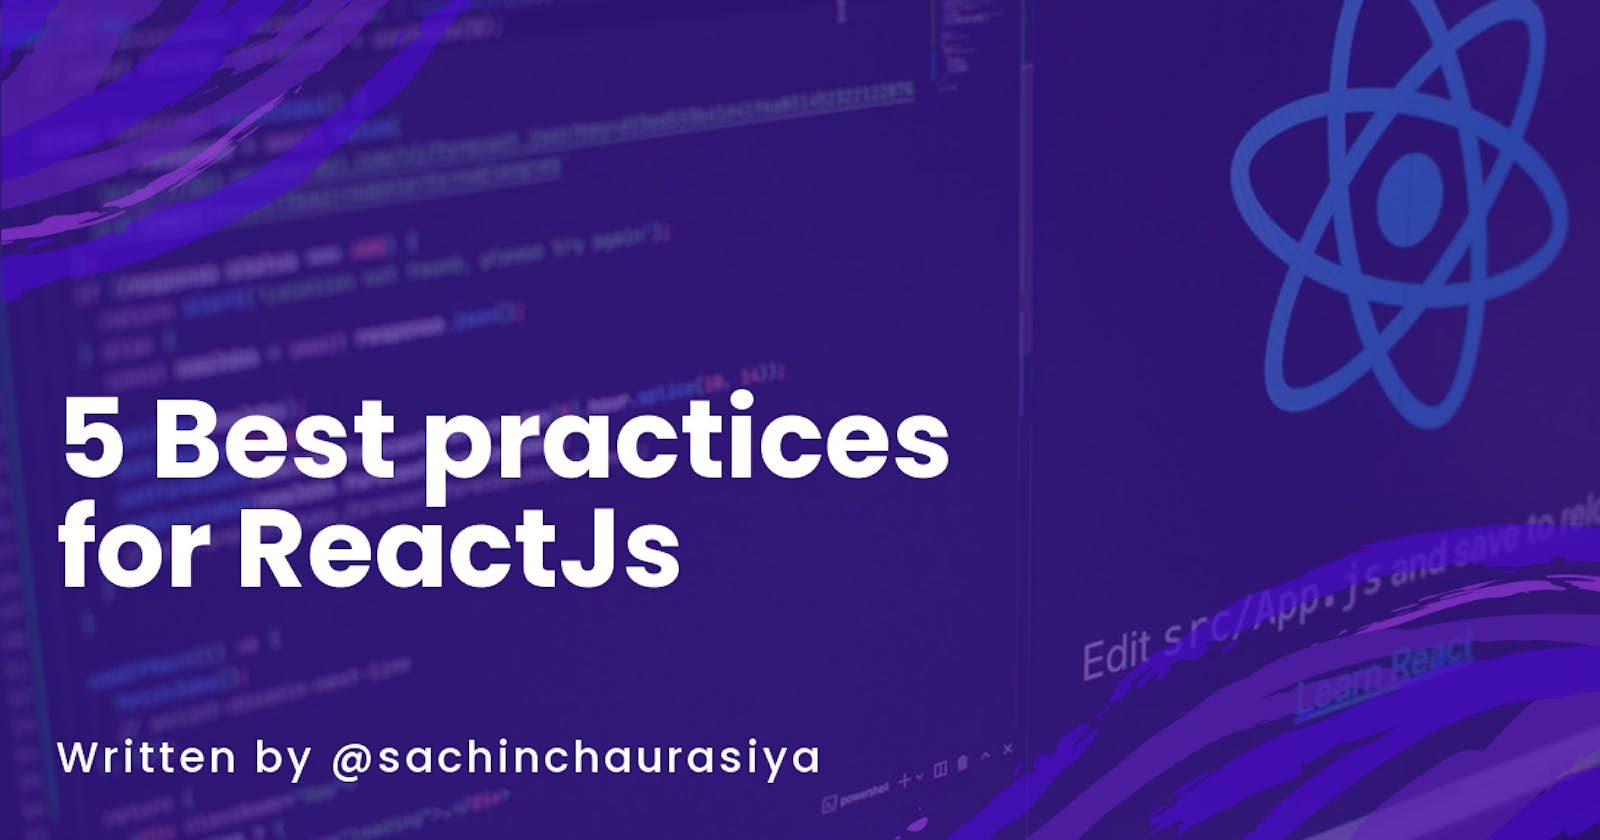 5 Best practices for ReactJs